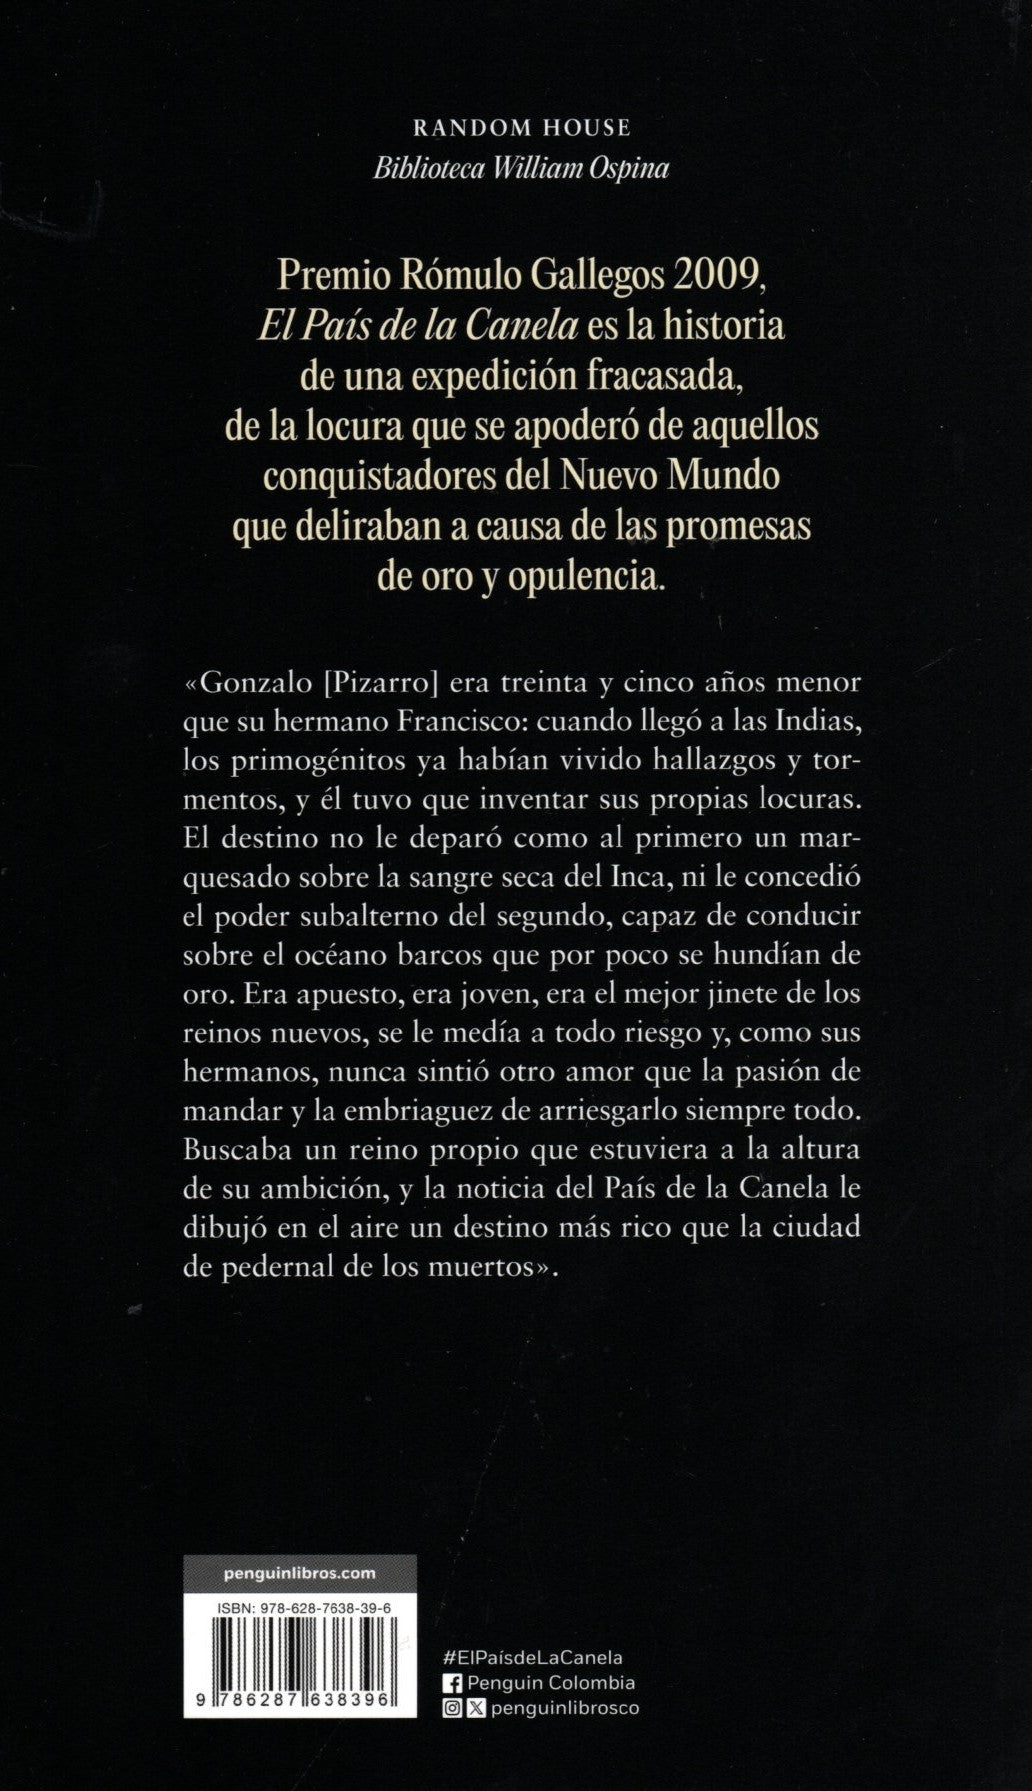 Libro William Ospina - El País de la Canela